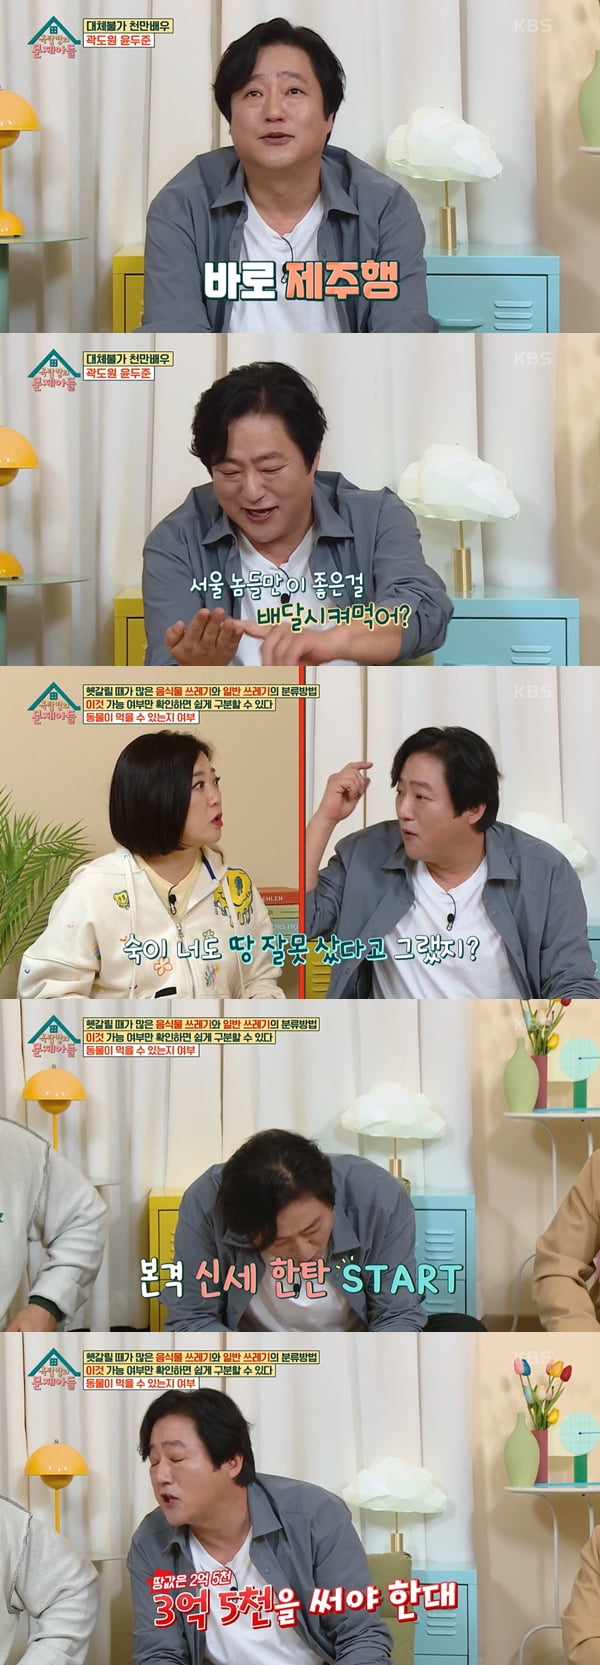 /사진=KBS2 '옥탑방의 문제아들' 방송화면 캡처